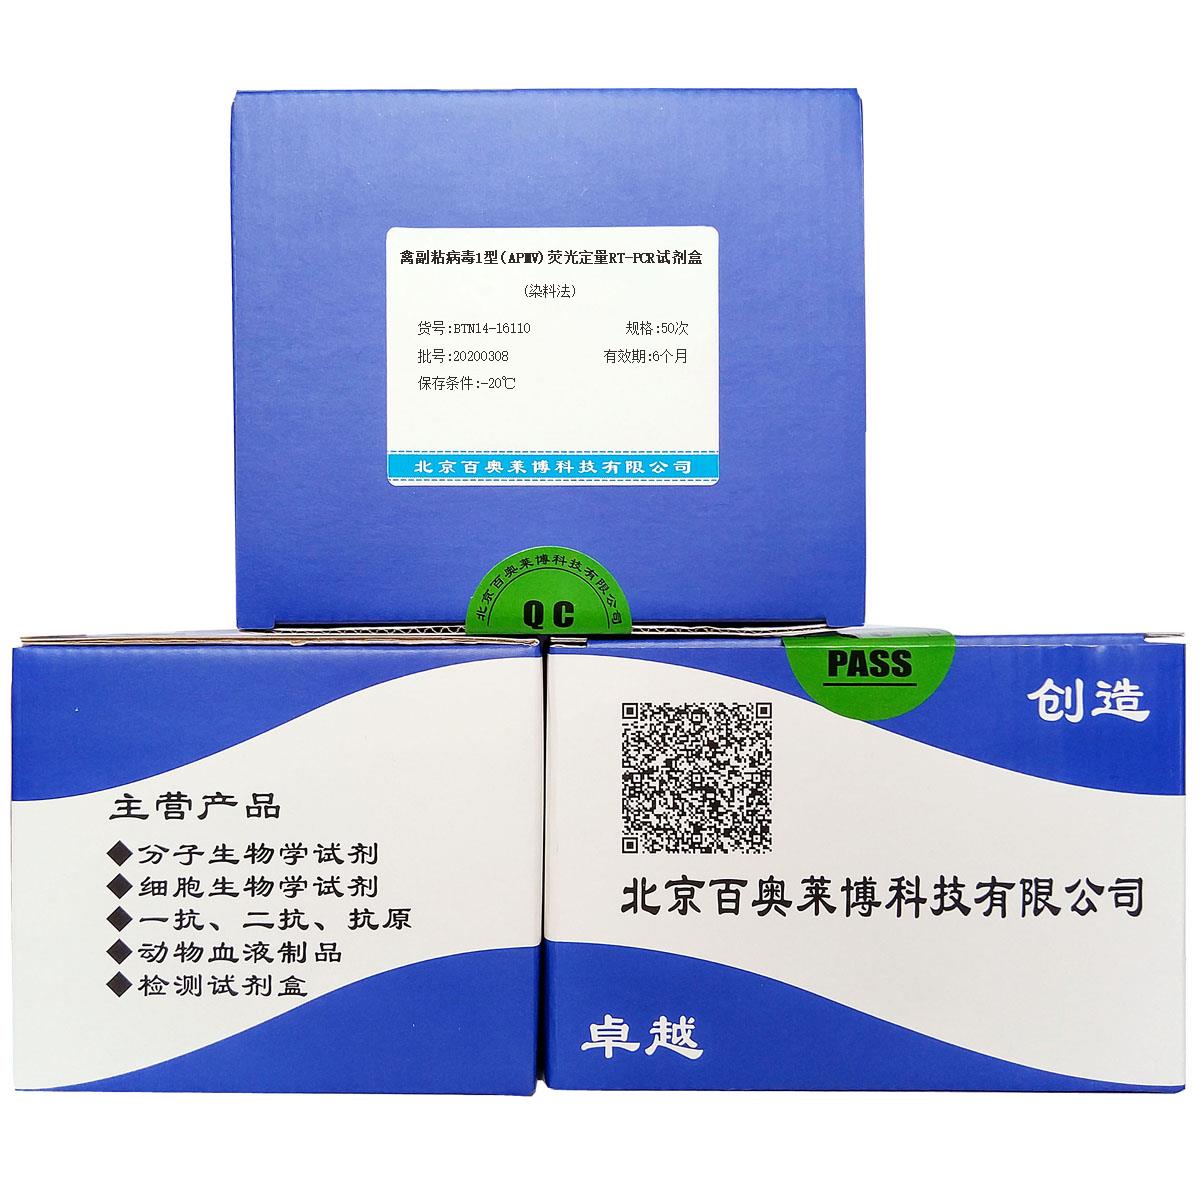 禽副粘病毒1型(APMV)荧光定量RT-PCR试剂盒(染料法)